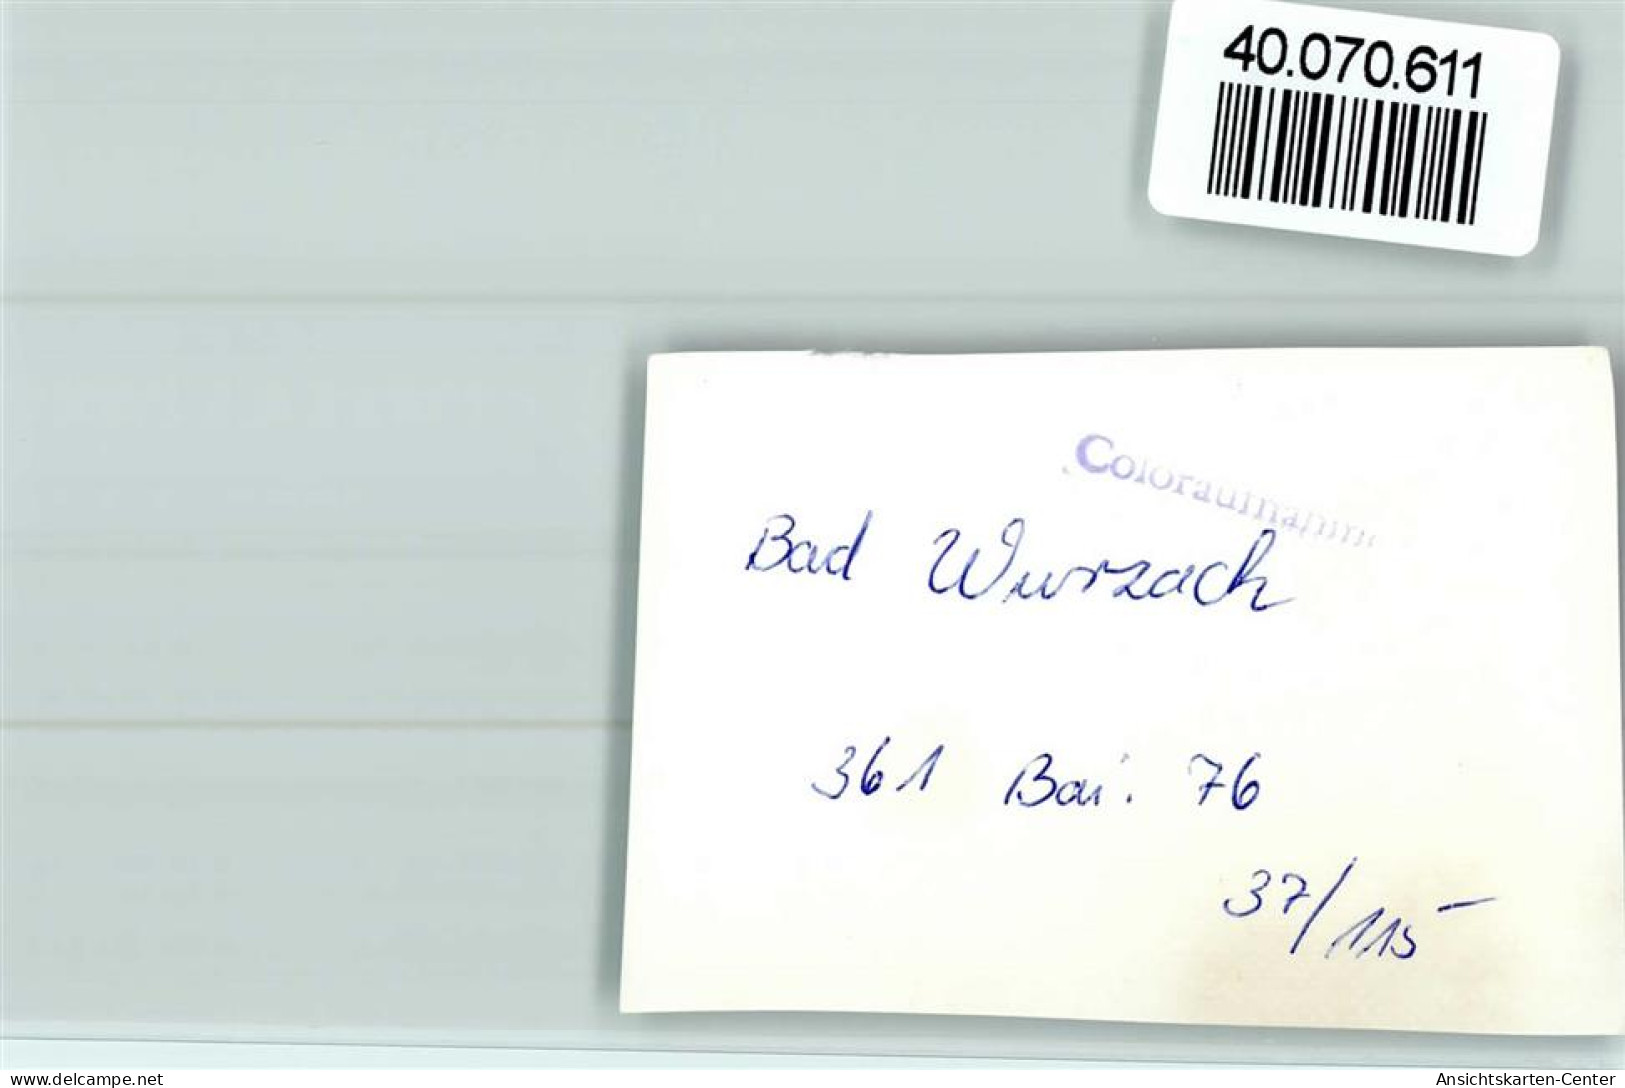 40070611 - Bad Wurzach - Bad Wurzach